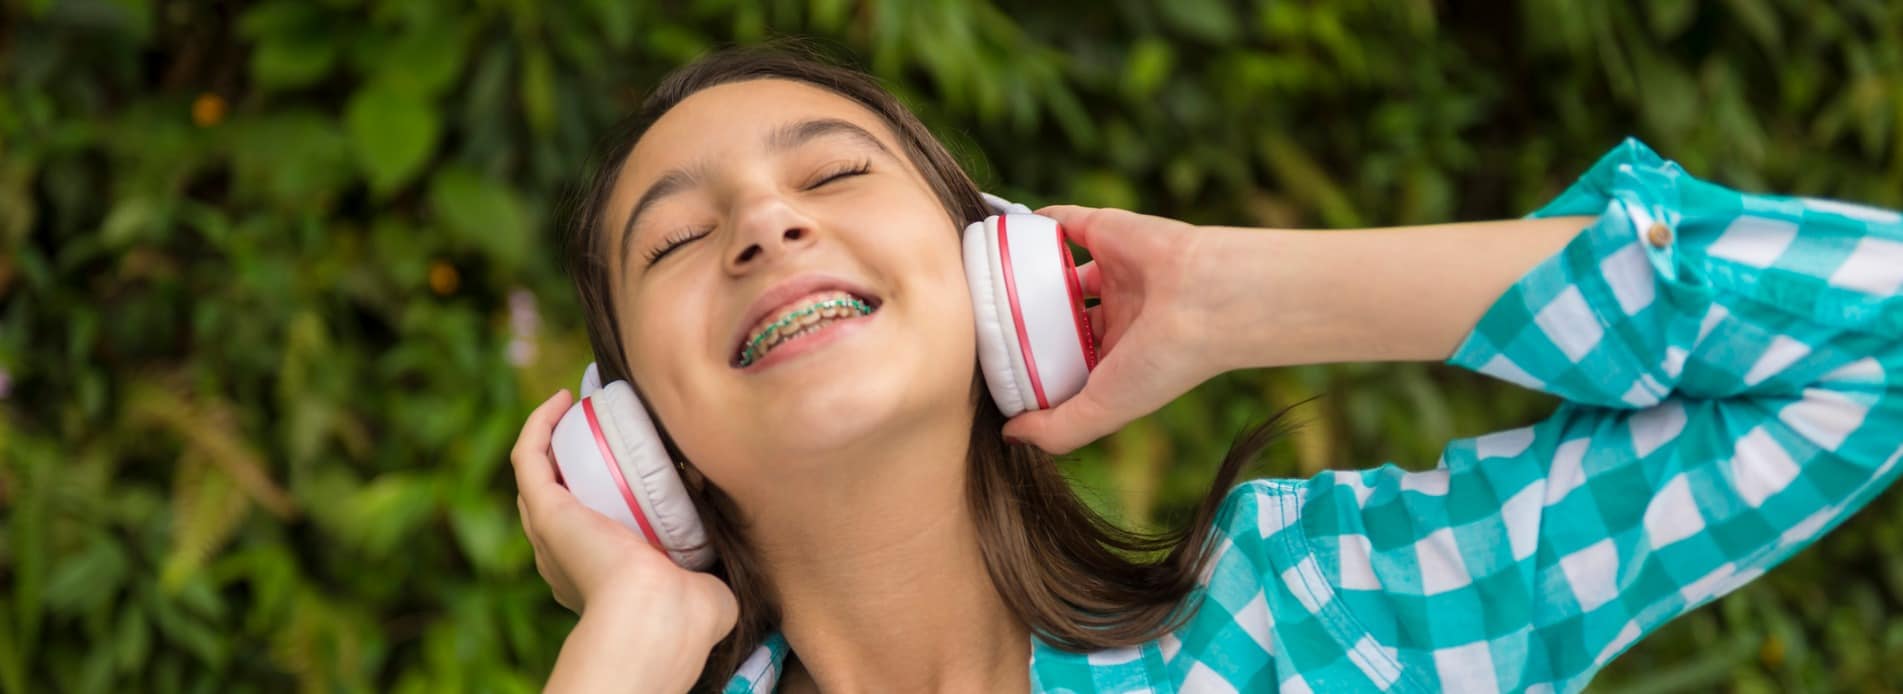 teenage girl with headphones